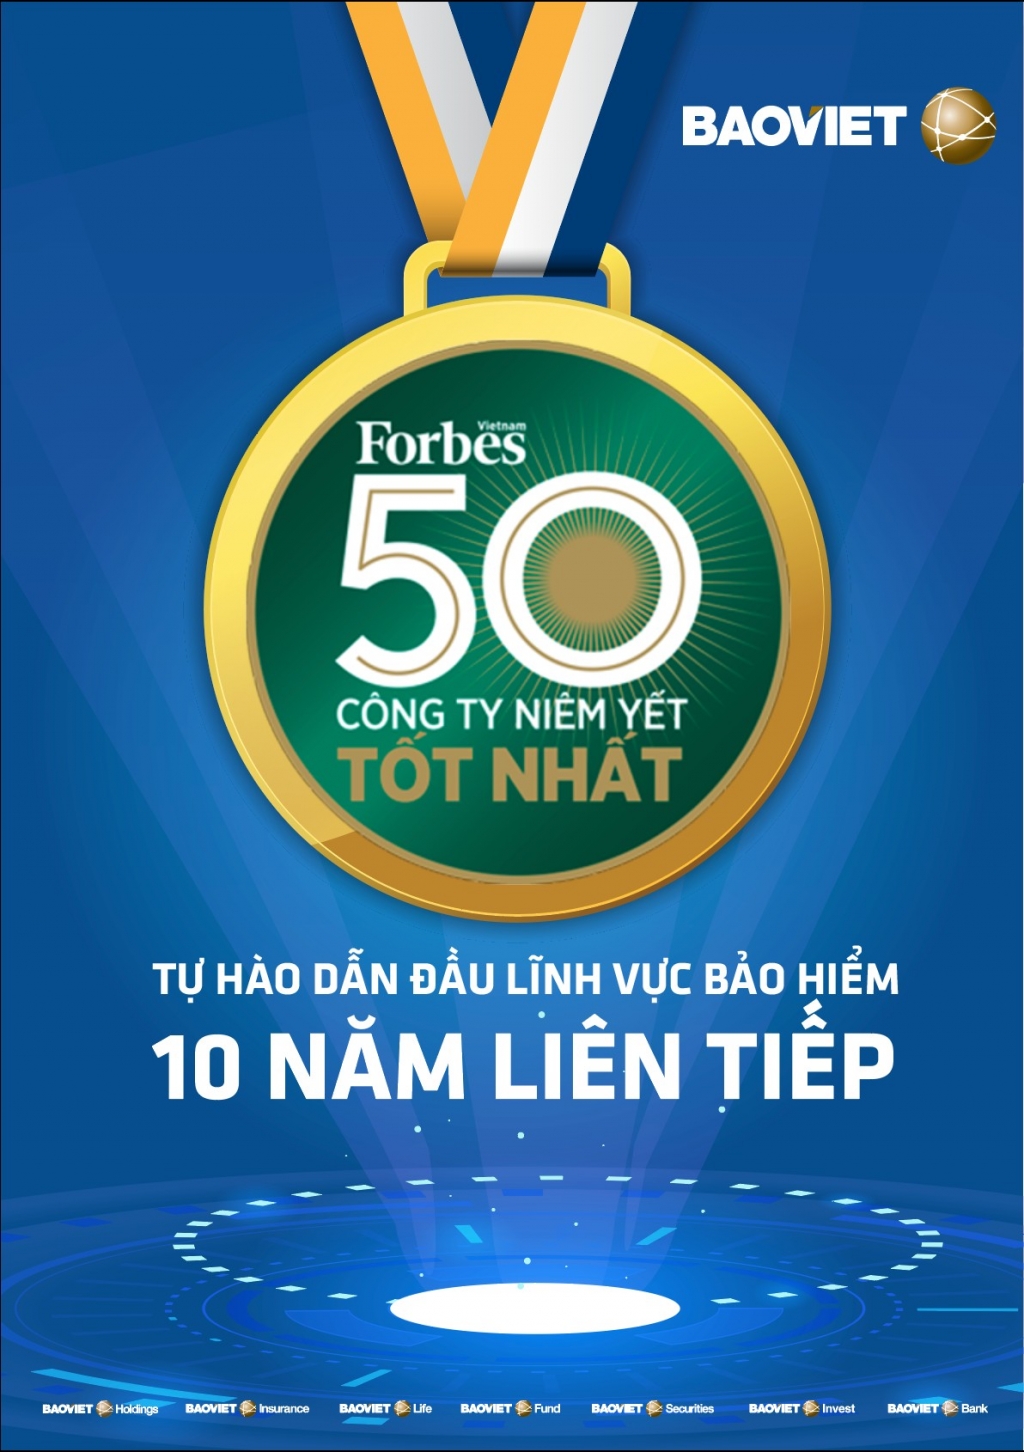 Bảo Việt lần thứ 10 vào TOP 50 công ty niêm yết tốt nhất do Forbes công bố